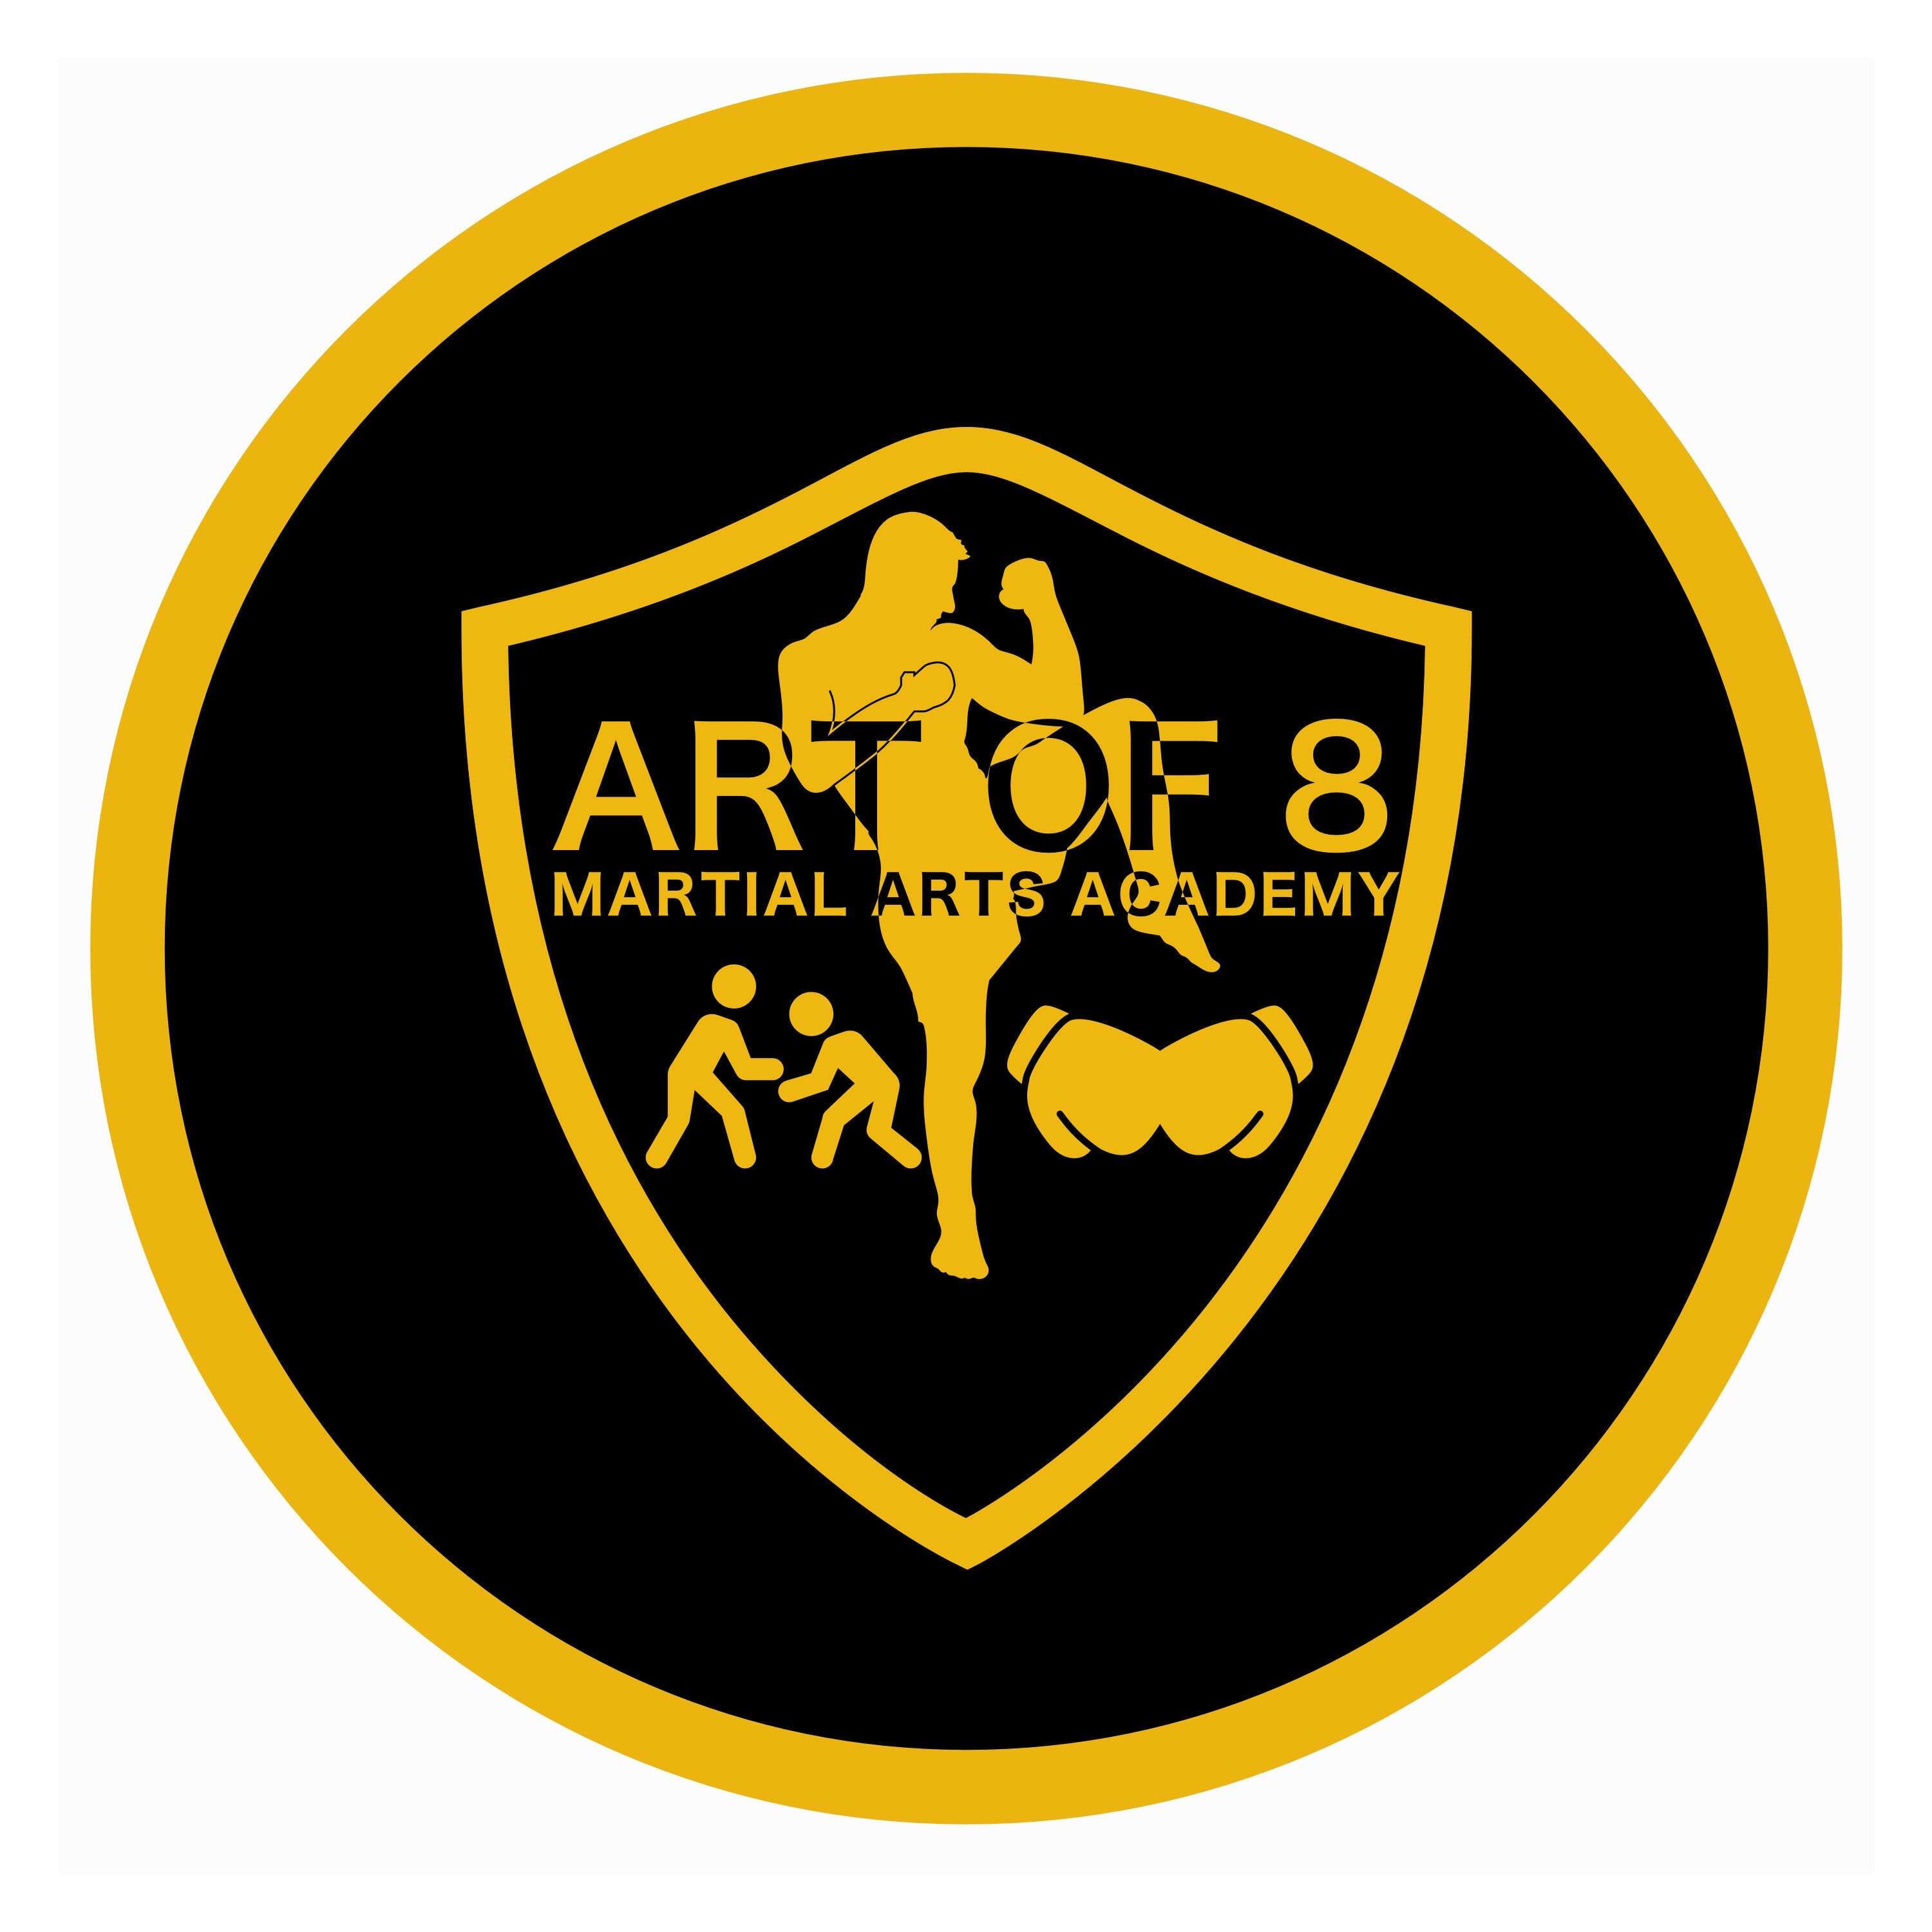 Art of 8 Martial Arts